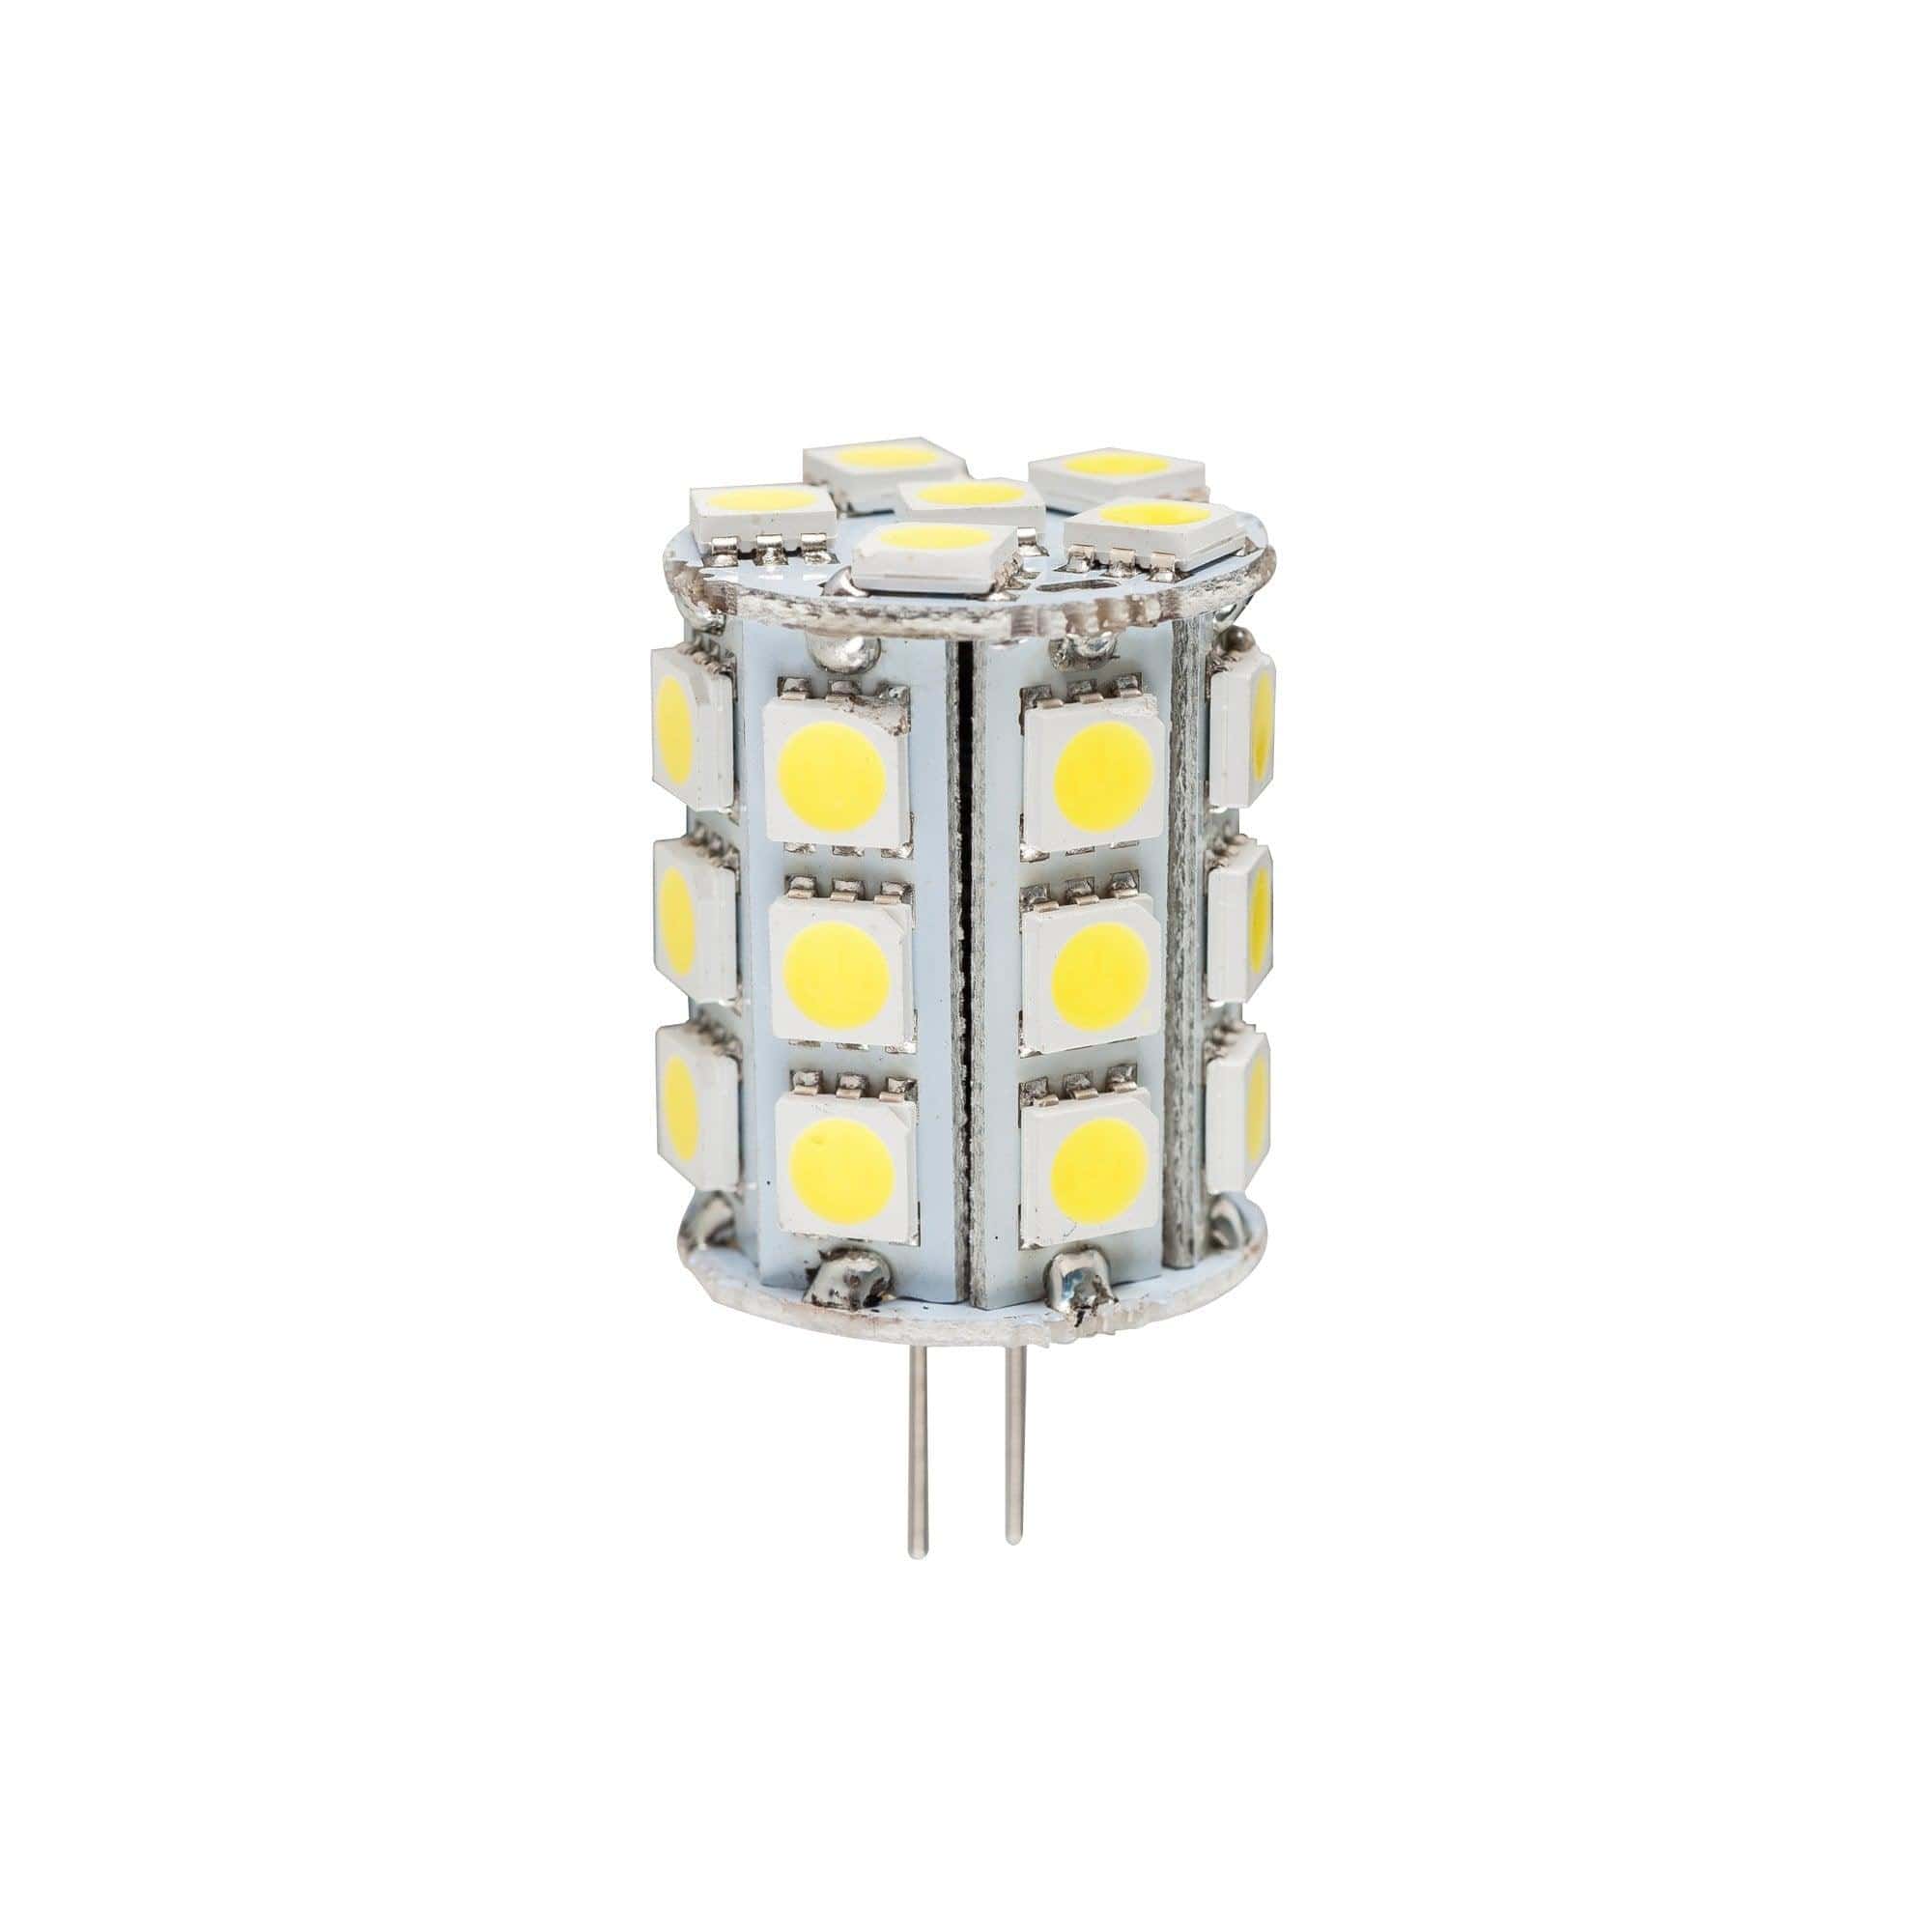 Havit Lighting LED Globes HV9523-5W / White HV9523-5W-HV9529-5W - 5w G4 12v DC LED Bi Pin Globe Lights-For-You HV9523-5W